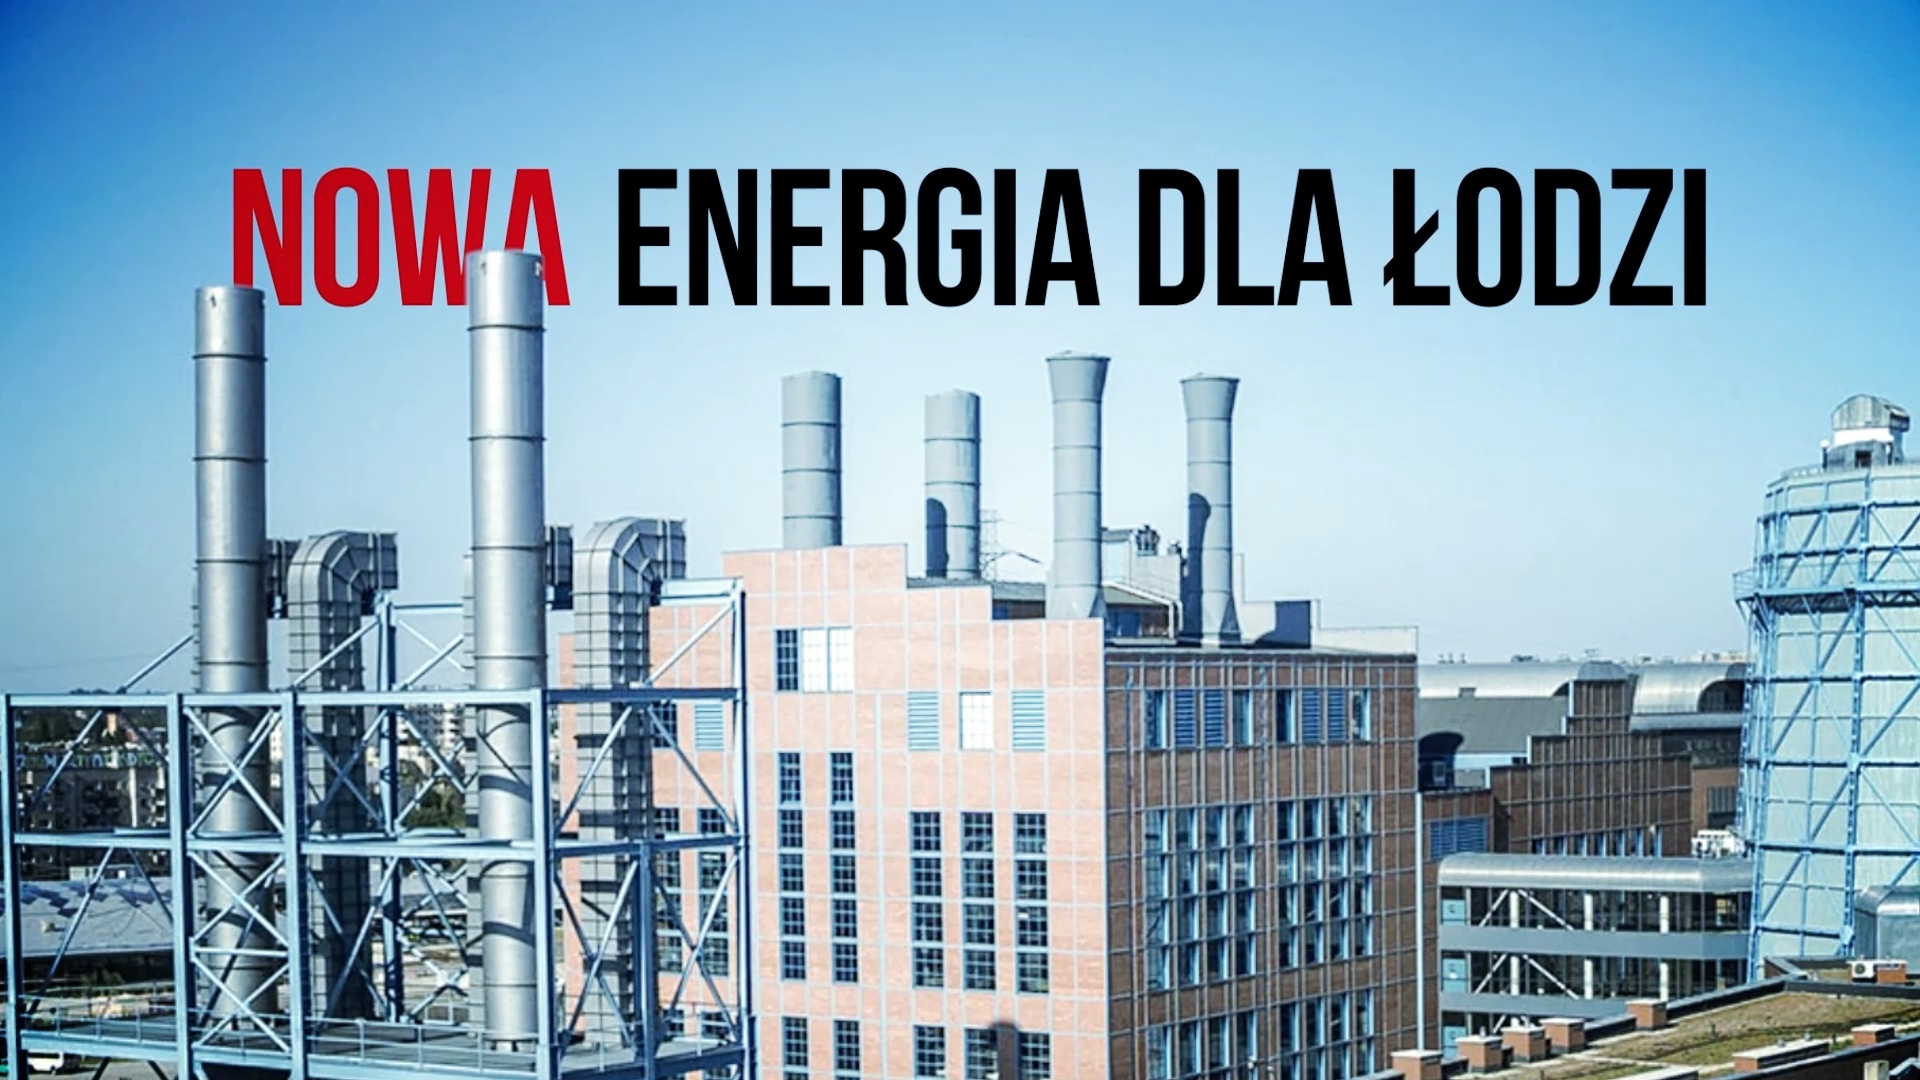 Nowa energia dla Łodzi - Centrum Nauki i Techniki EC1 i Veolia Energia Łódź